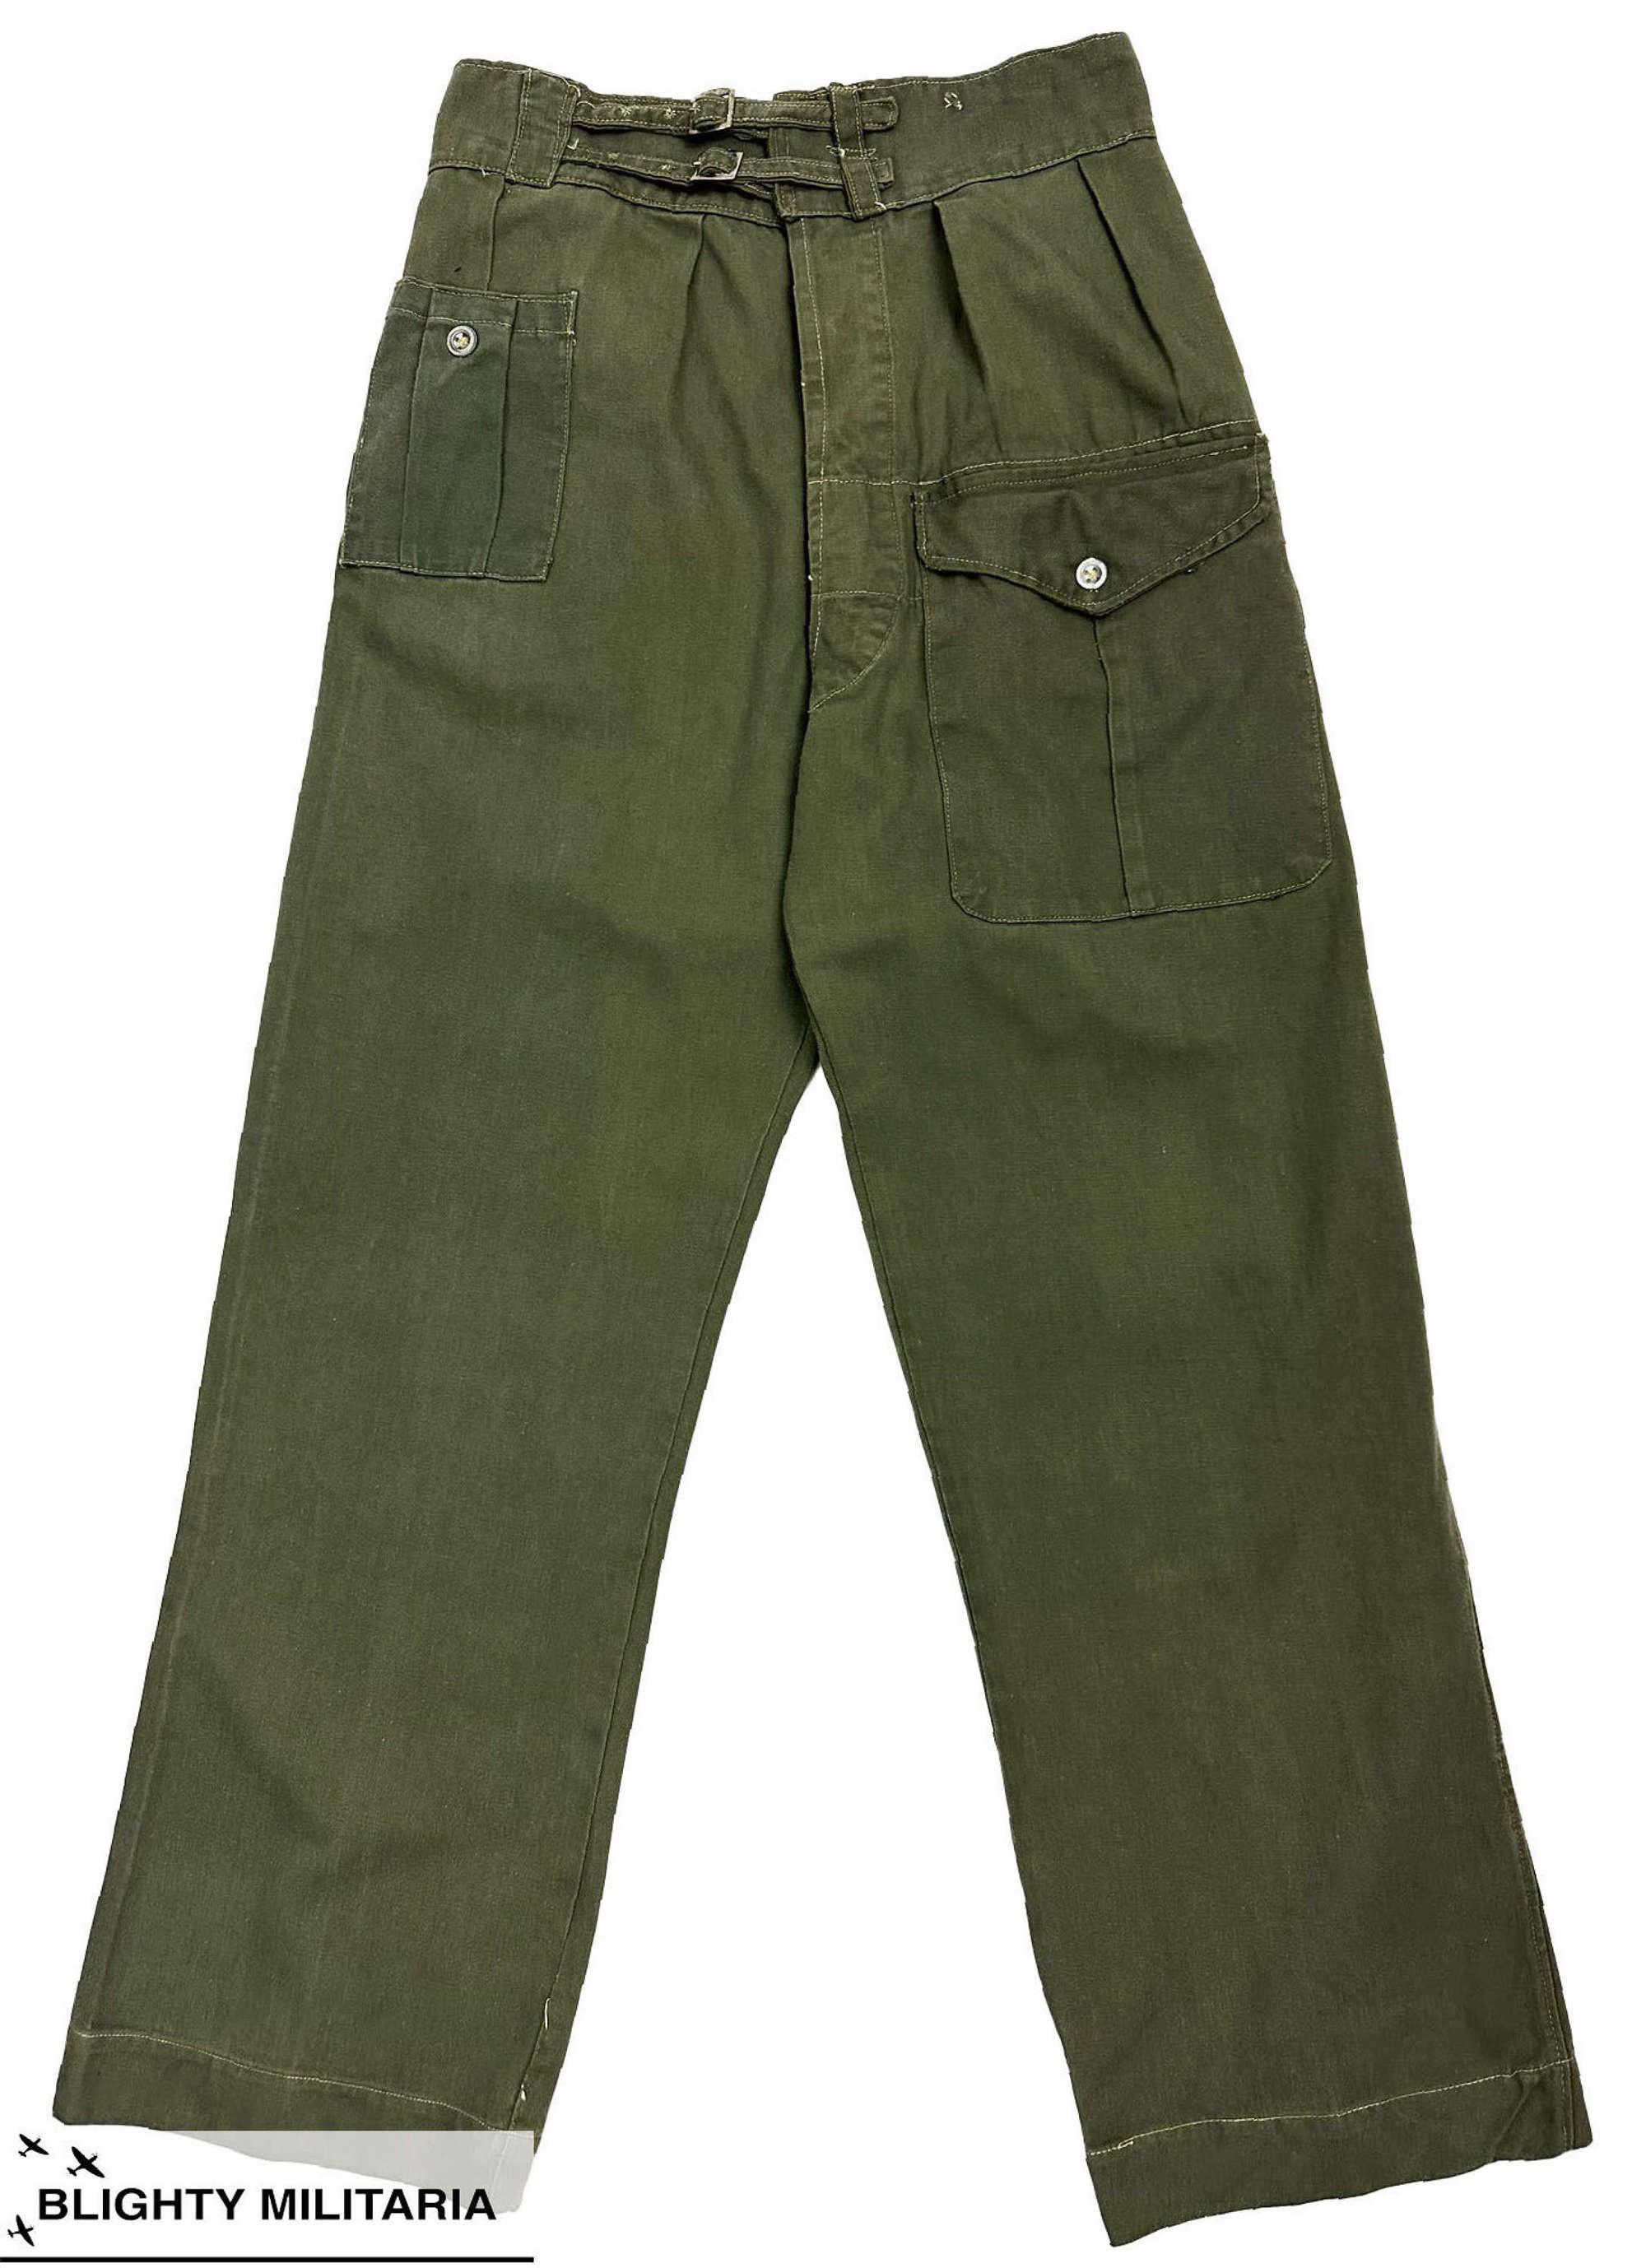 Original 1943 Dated Indian Made Jungle Green Battledress Trousers